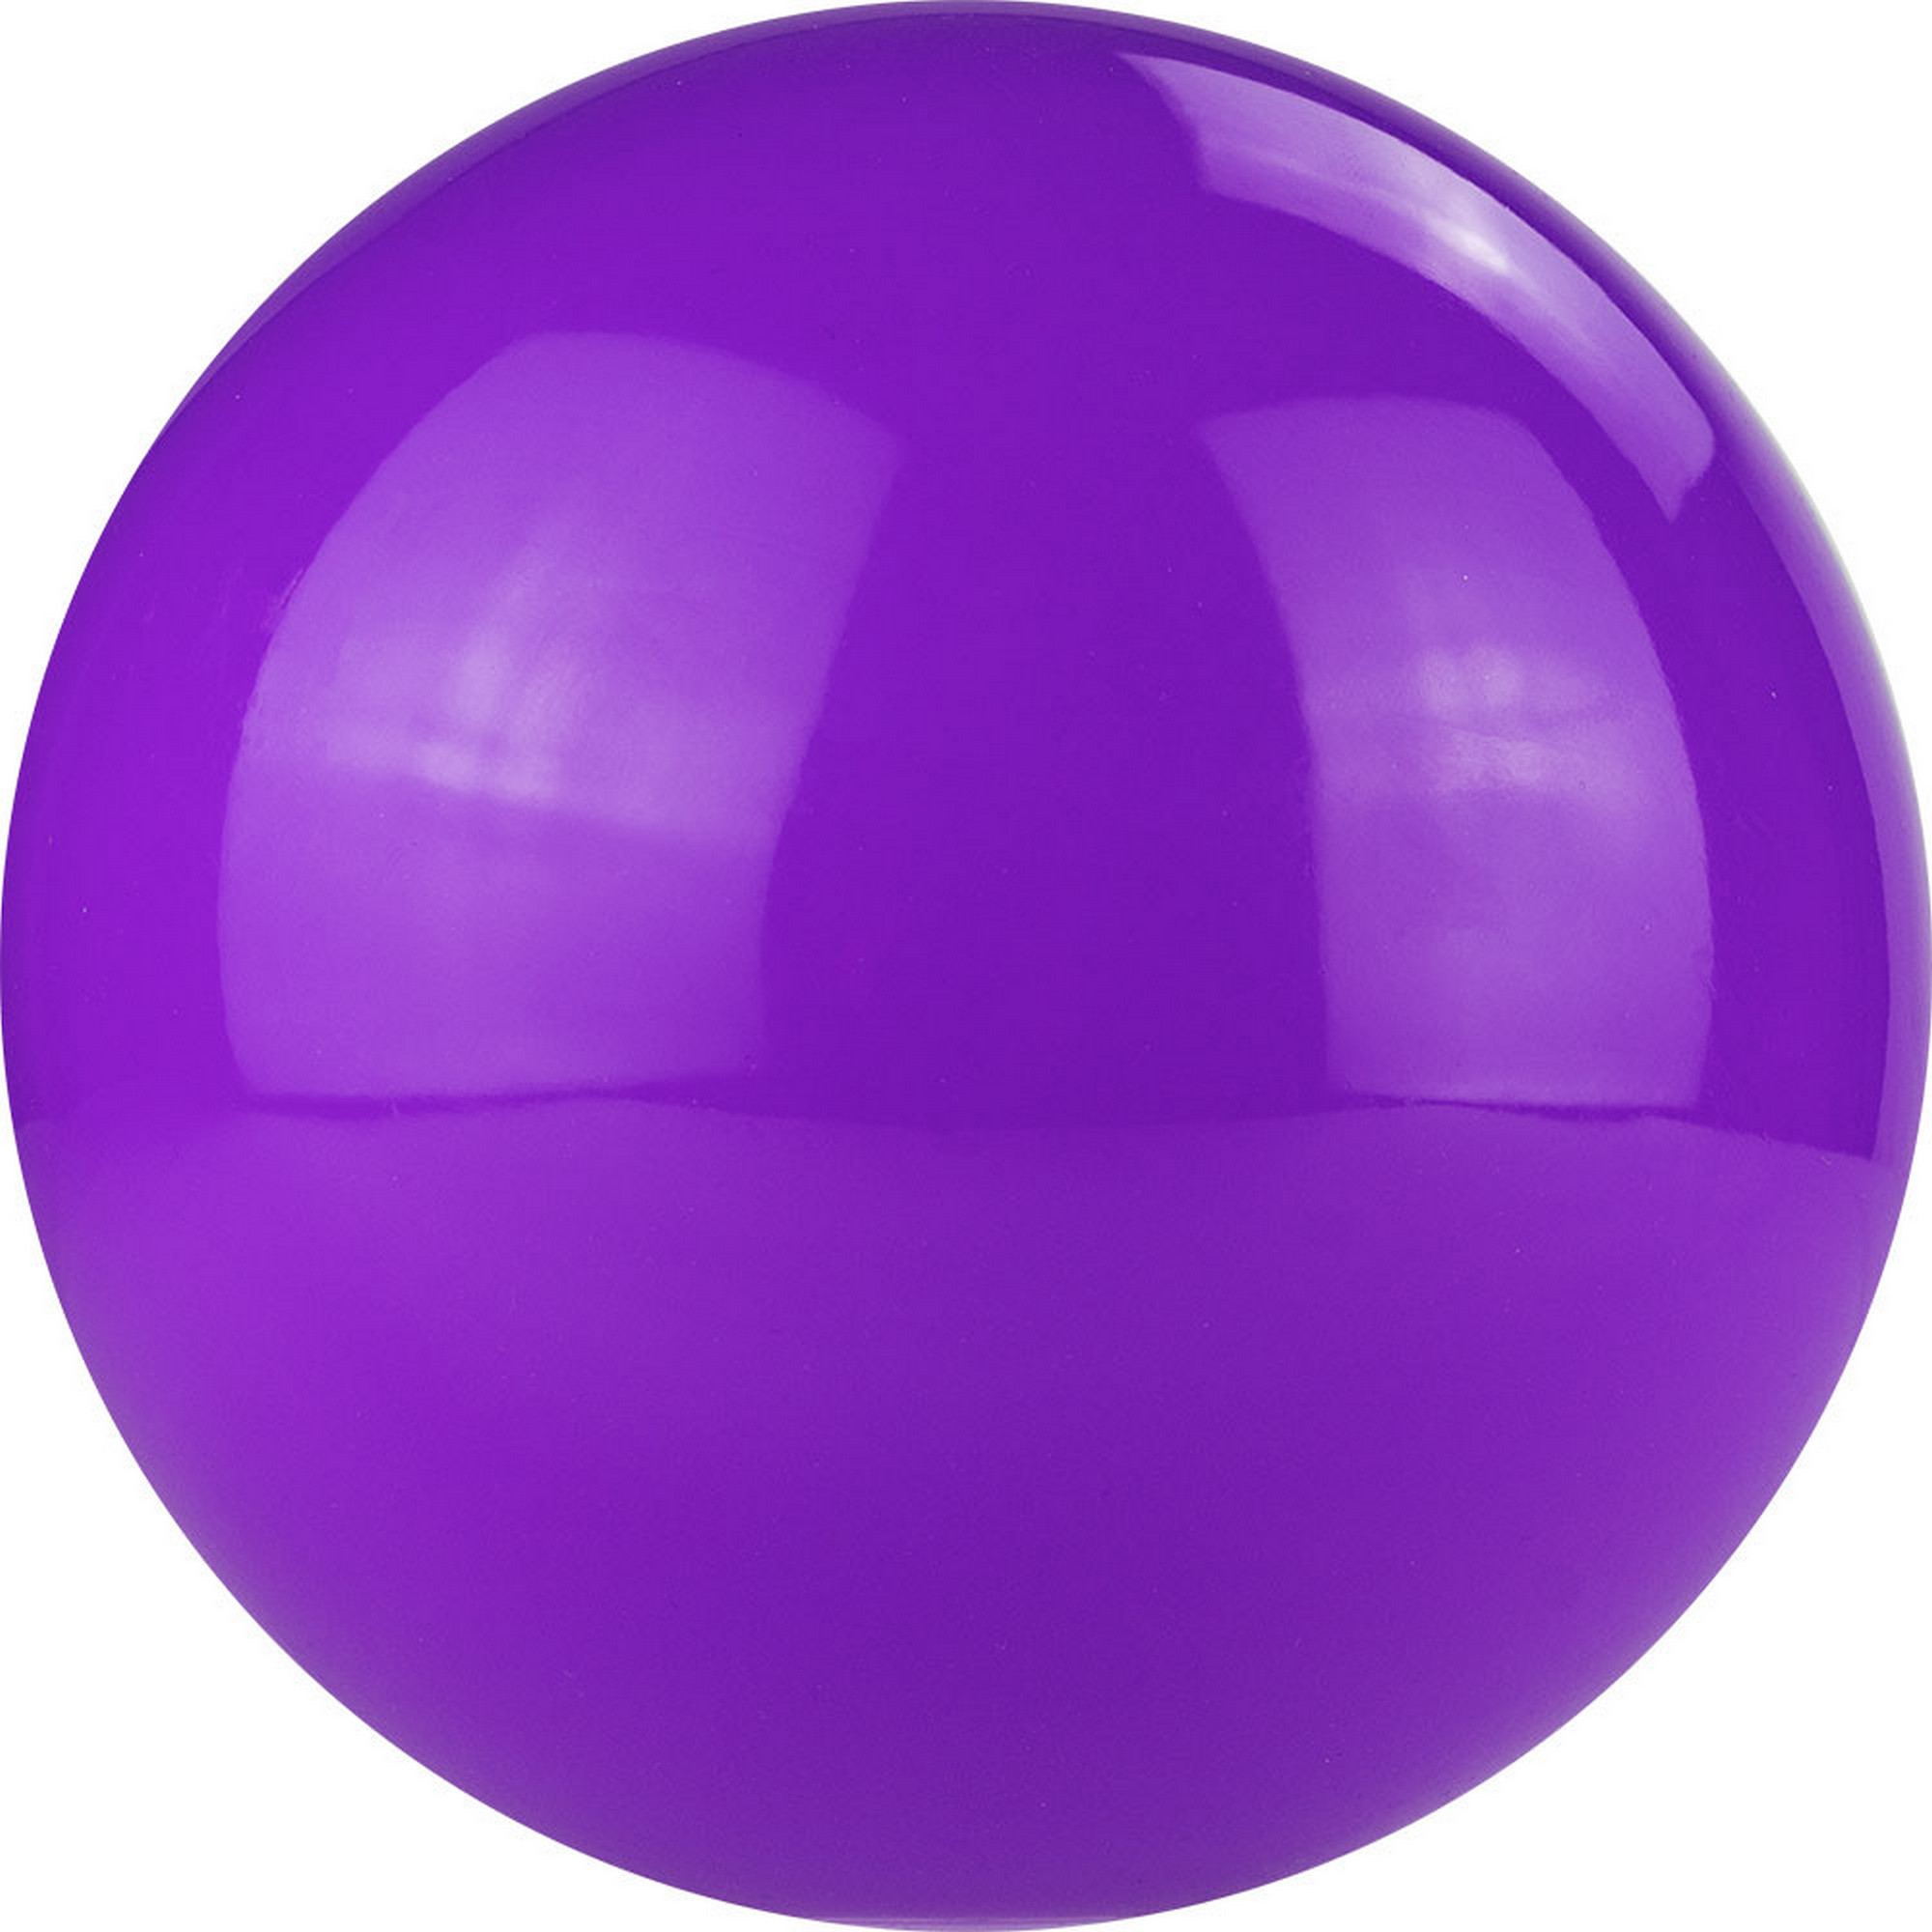 Мяч для художественной гимнастики однотонный d19 см Torres ПВХ AG-19-09 лиловый